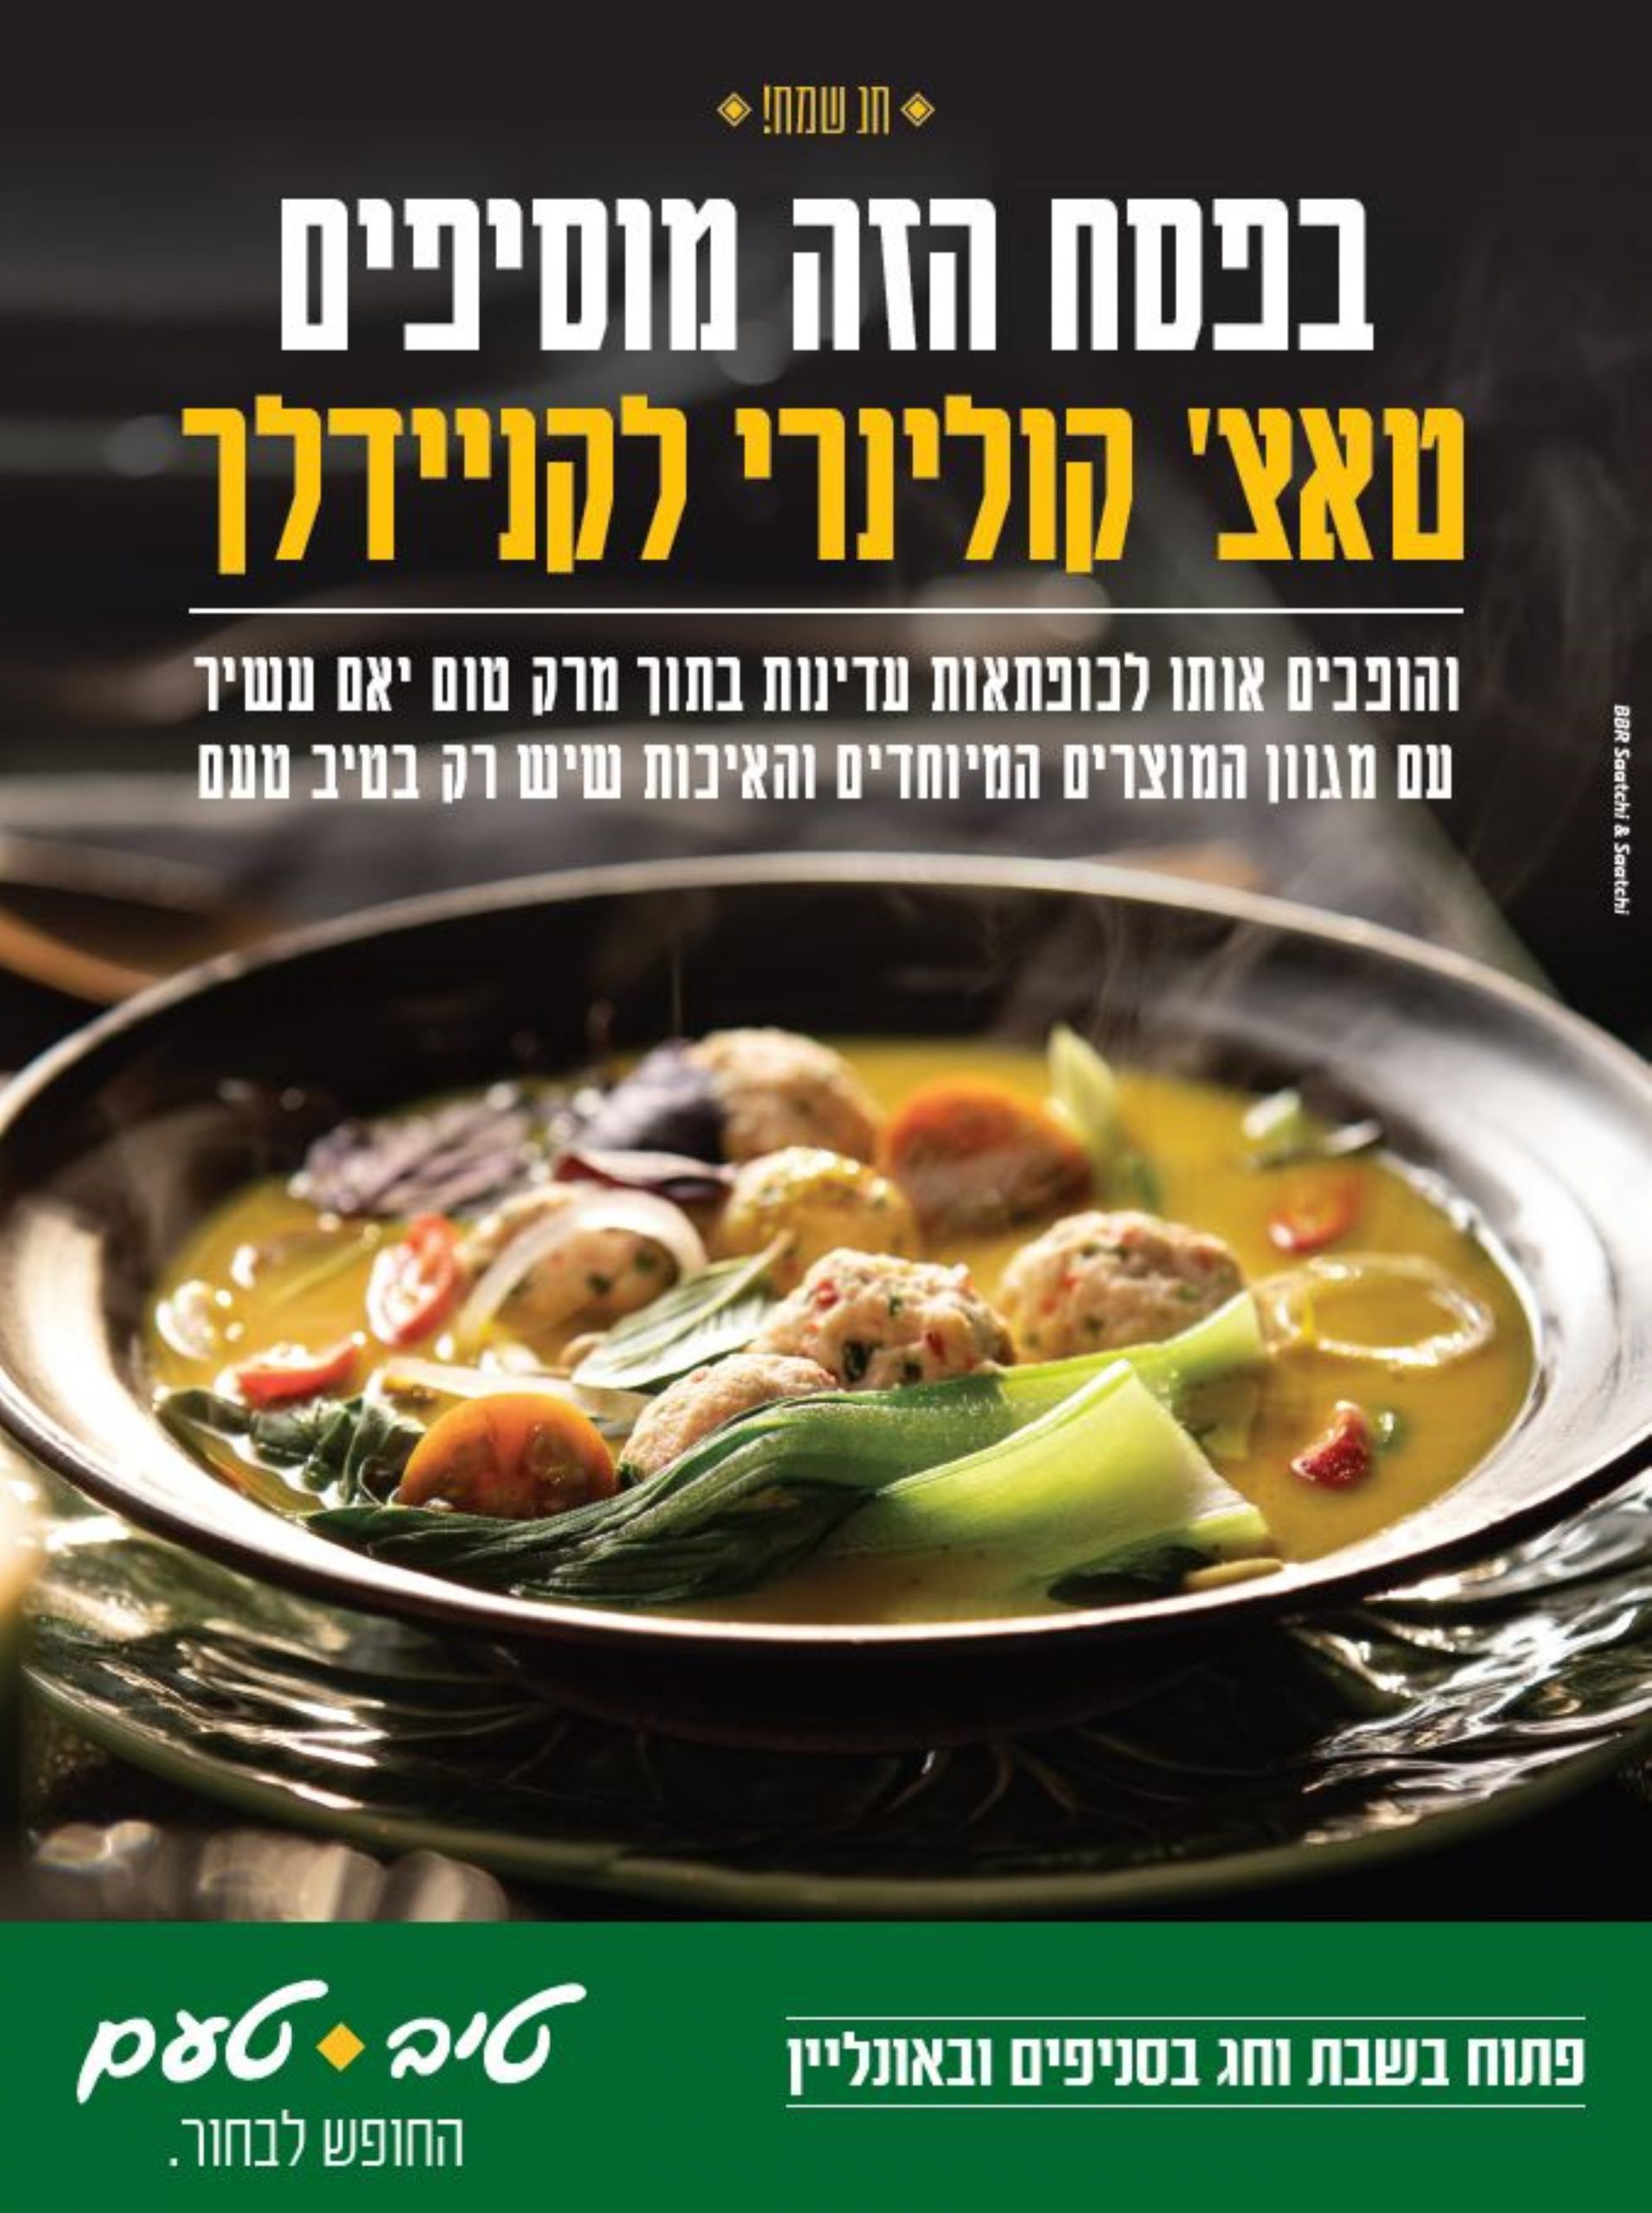 רשת טיב טעם עולה בקמפיין לקראת חג הפסח תחת הסלוגן: " טאצ' קולינרי לארוחת החג